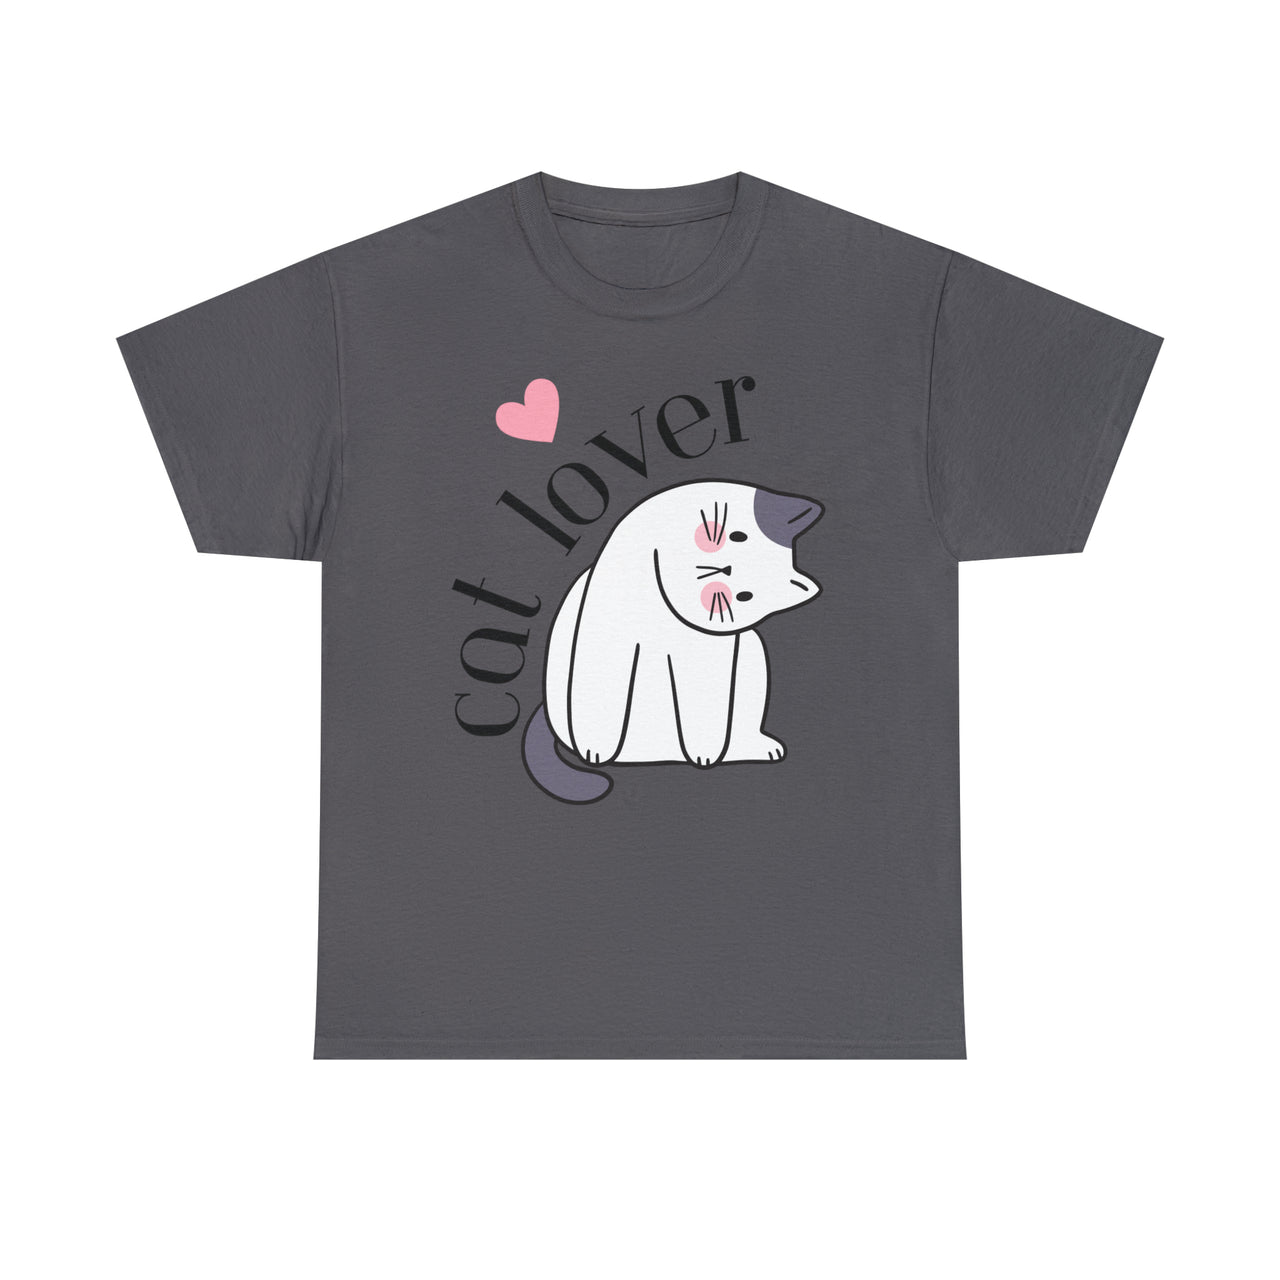 Cat Lover Unisex T-Shirt